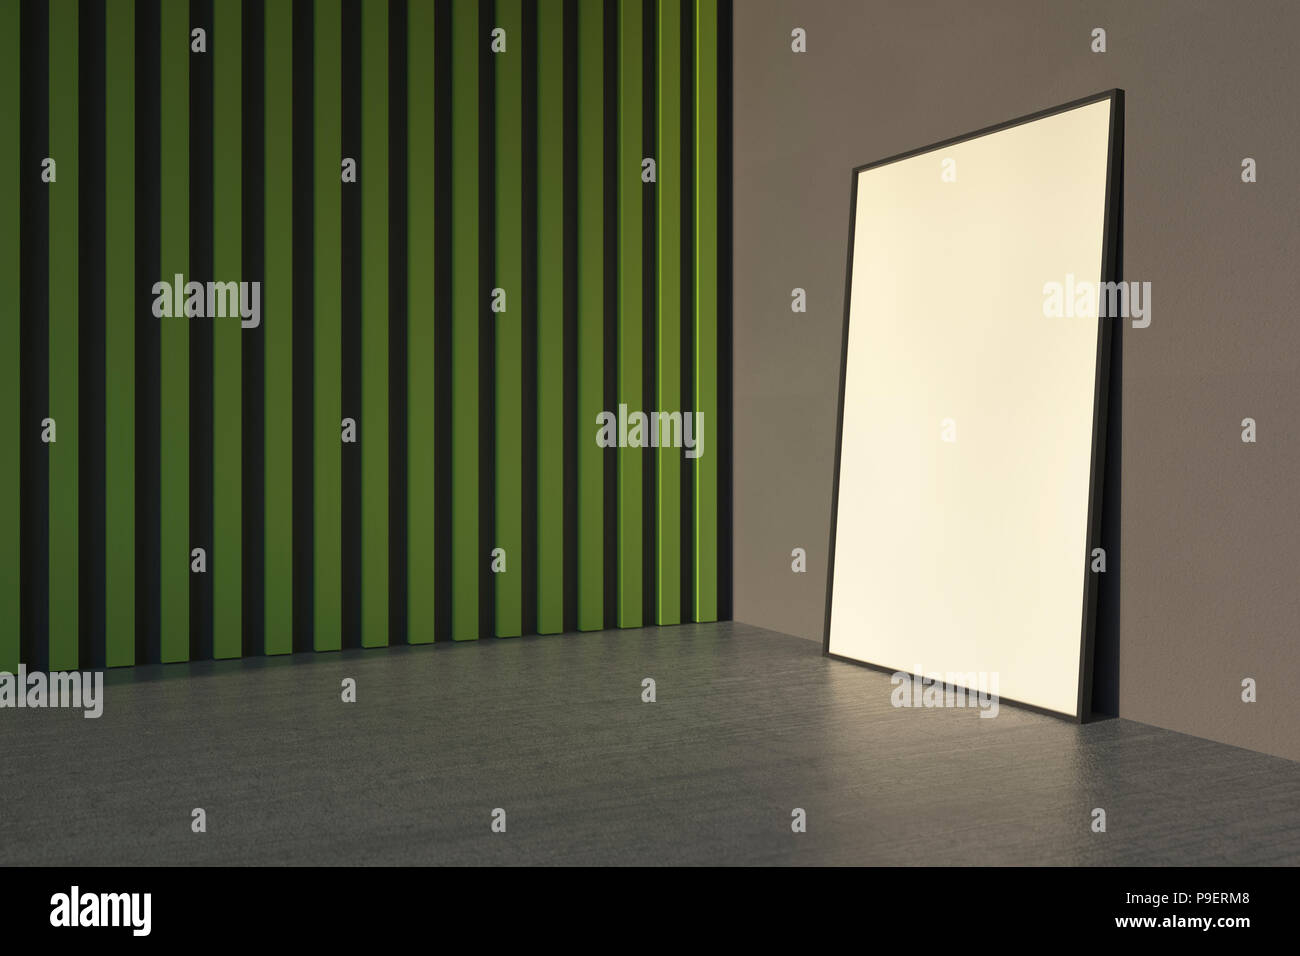 3d immagine interiore. Mockup un poster all'interno dell'edificio. Parete ricoperta con listelli di colore verde. Foto Stock